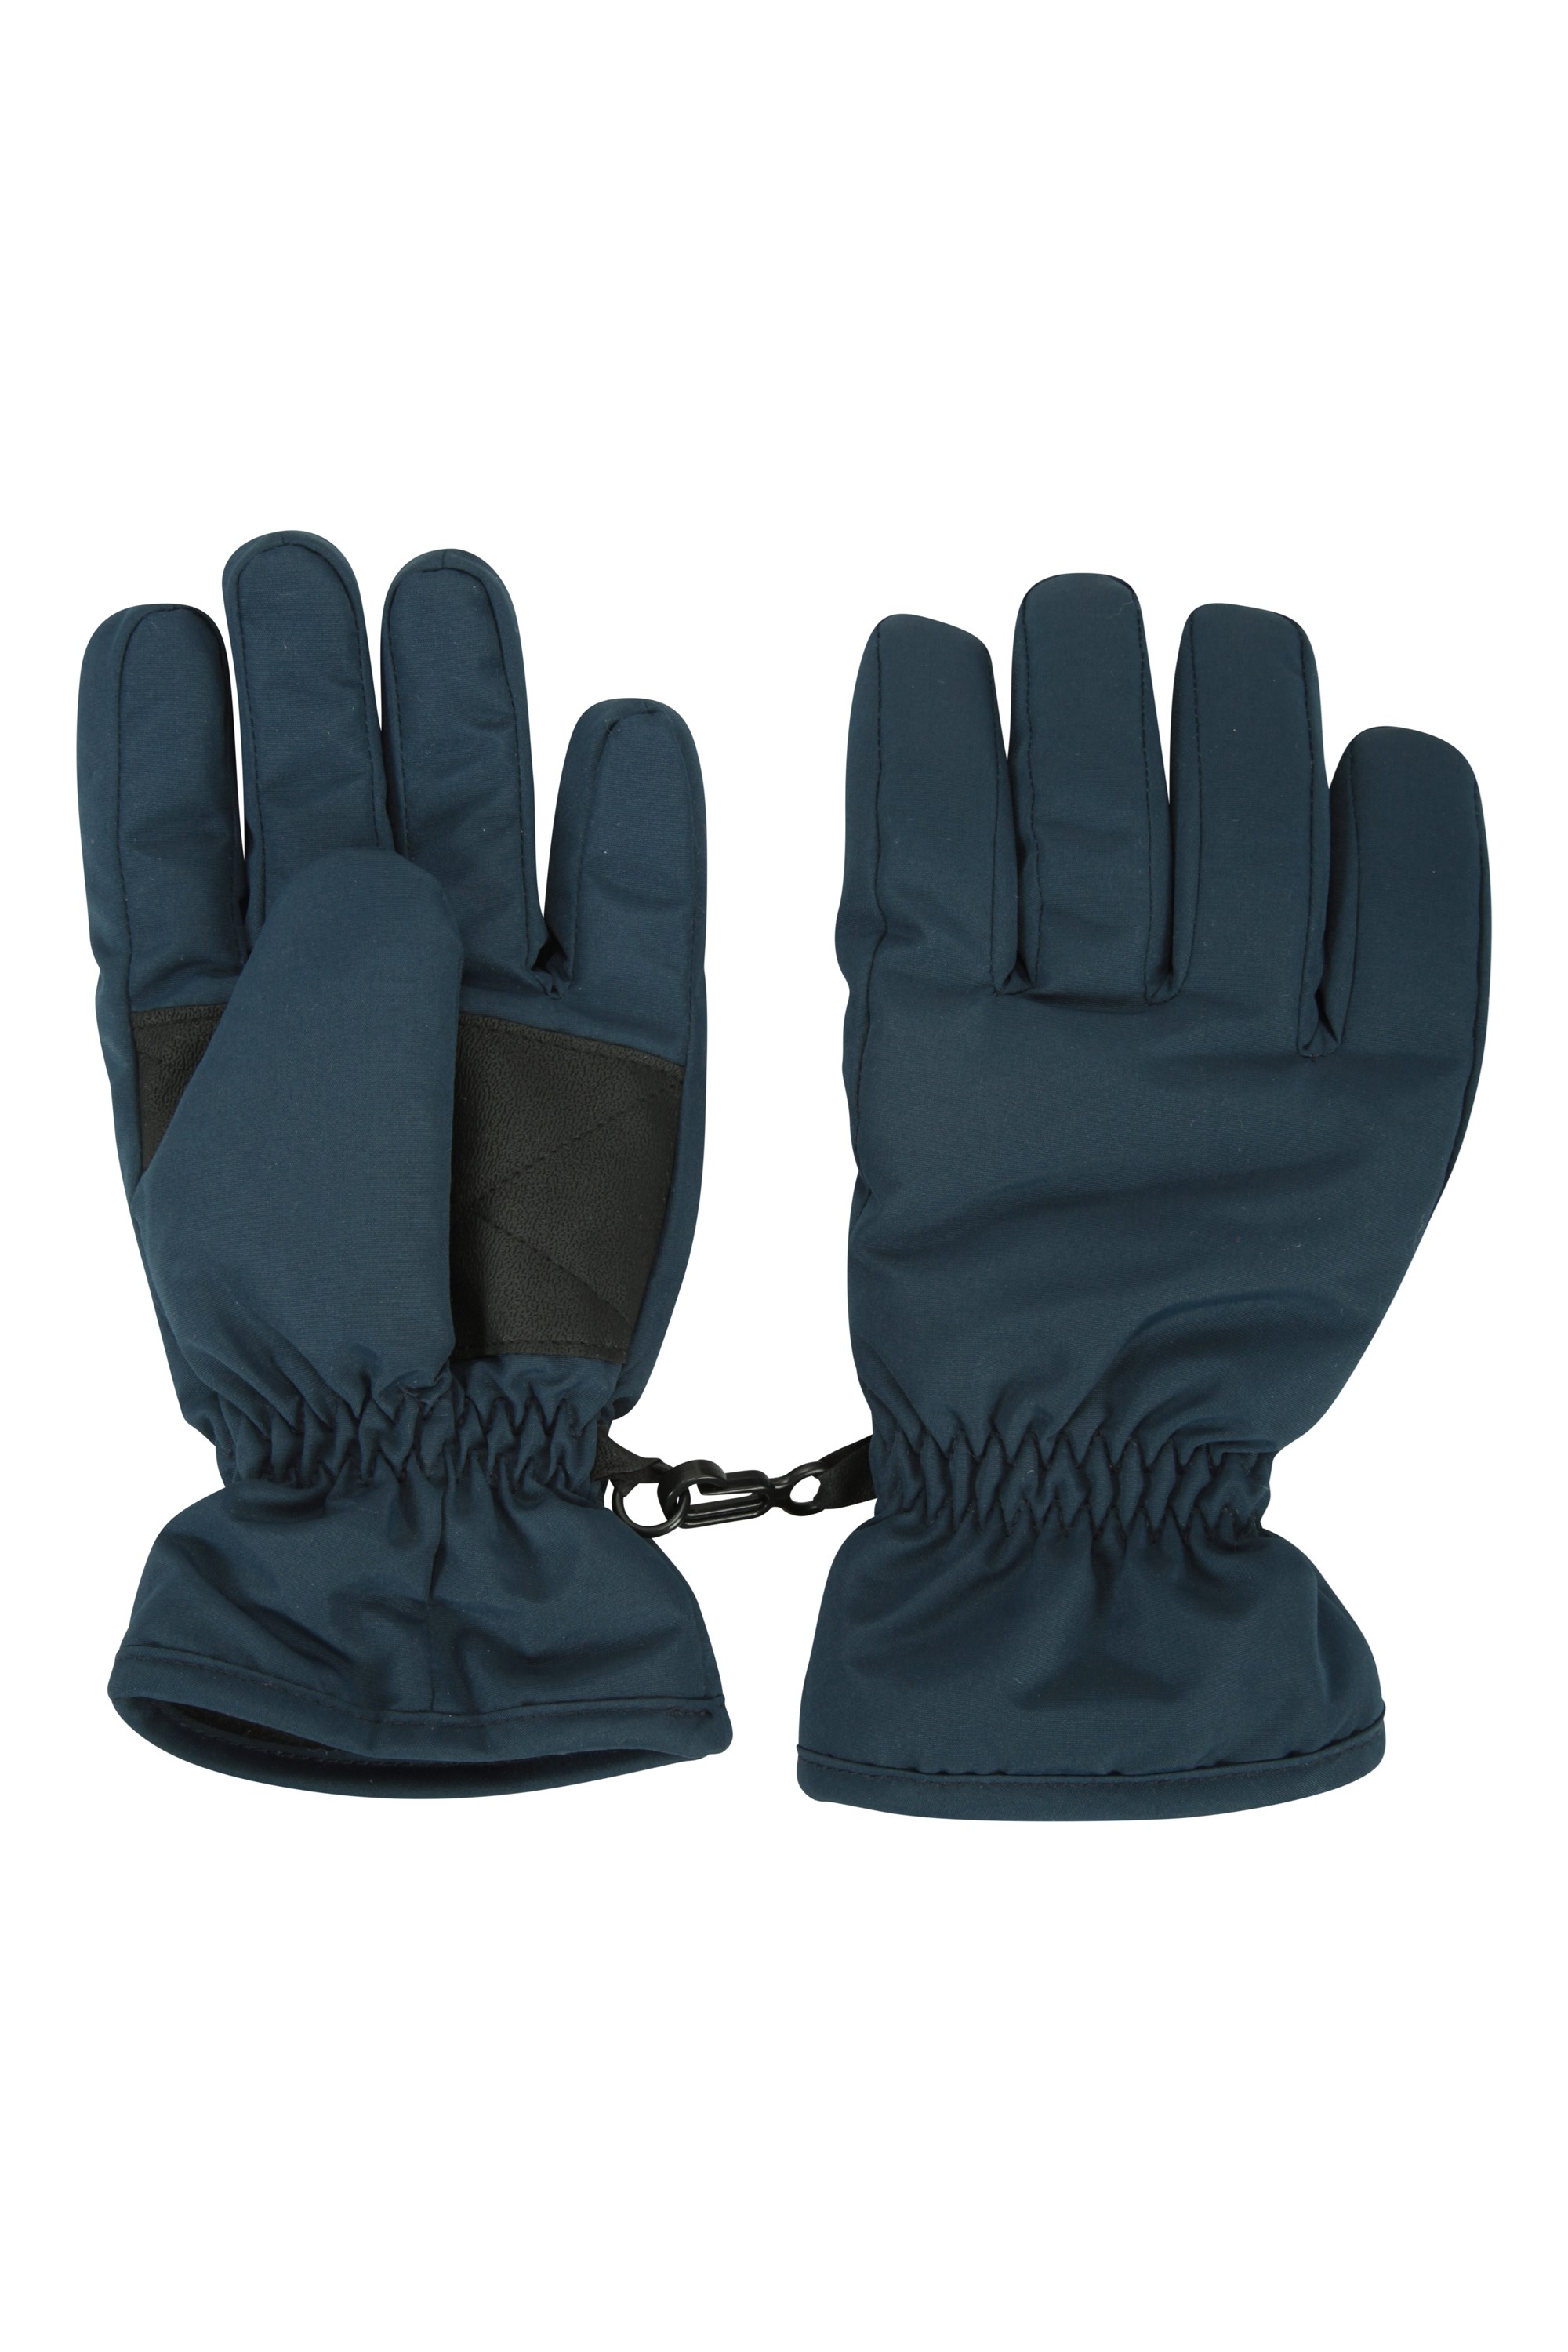 Kids Ski Gloves - Blue